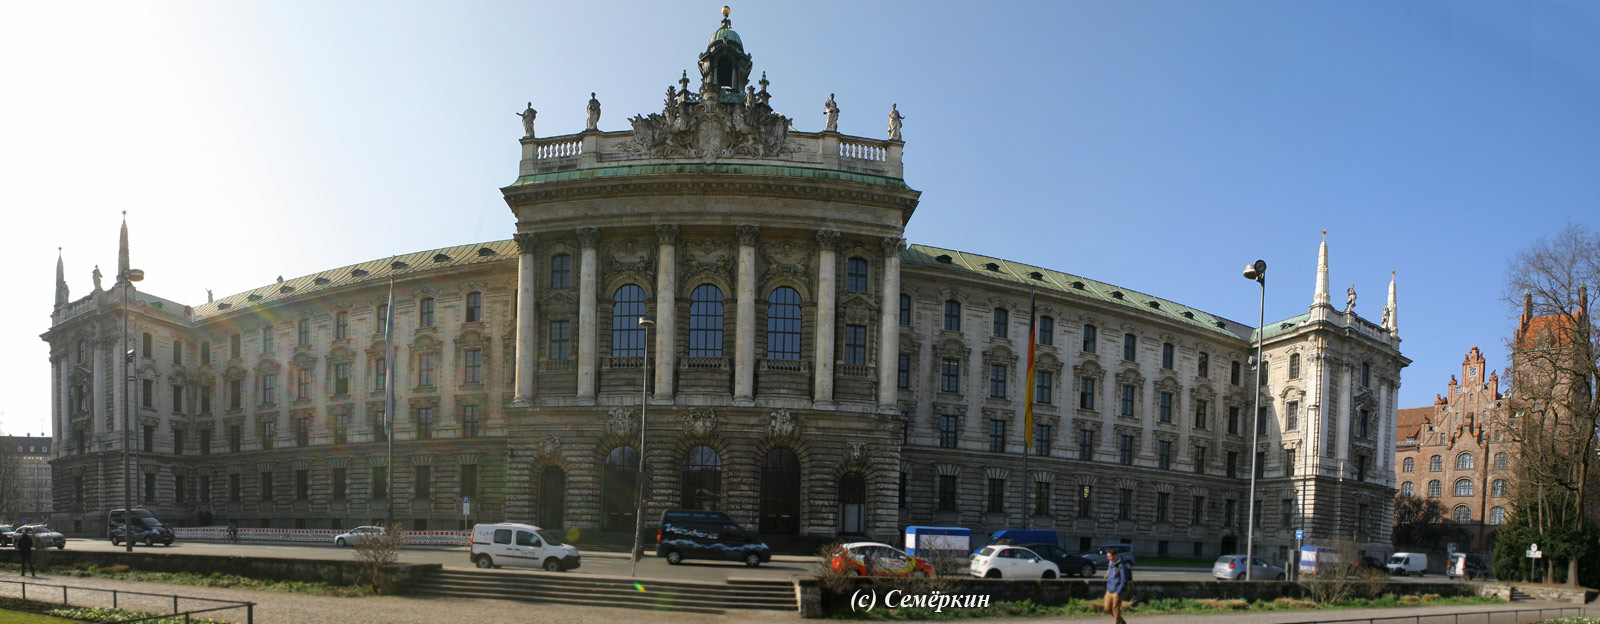 Мюнхен Достопримечательности - Дворец Юстиции (Дворец Правосудия)